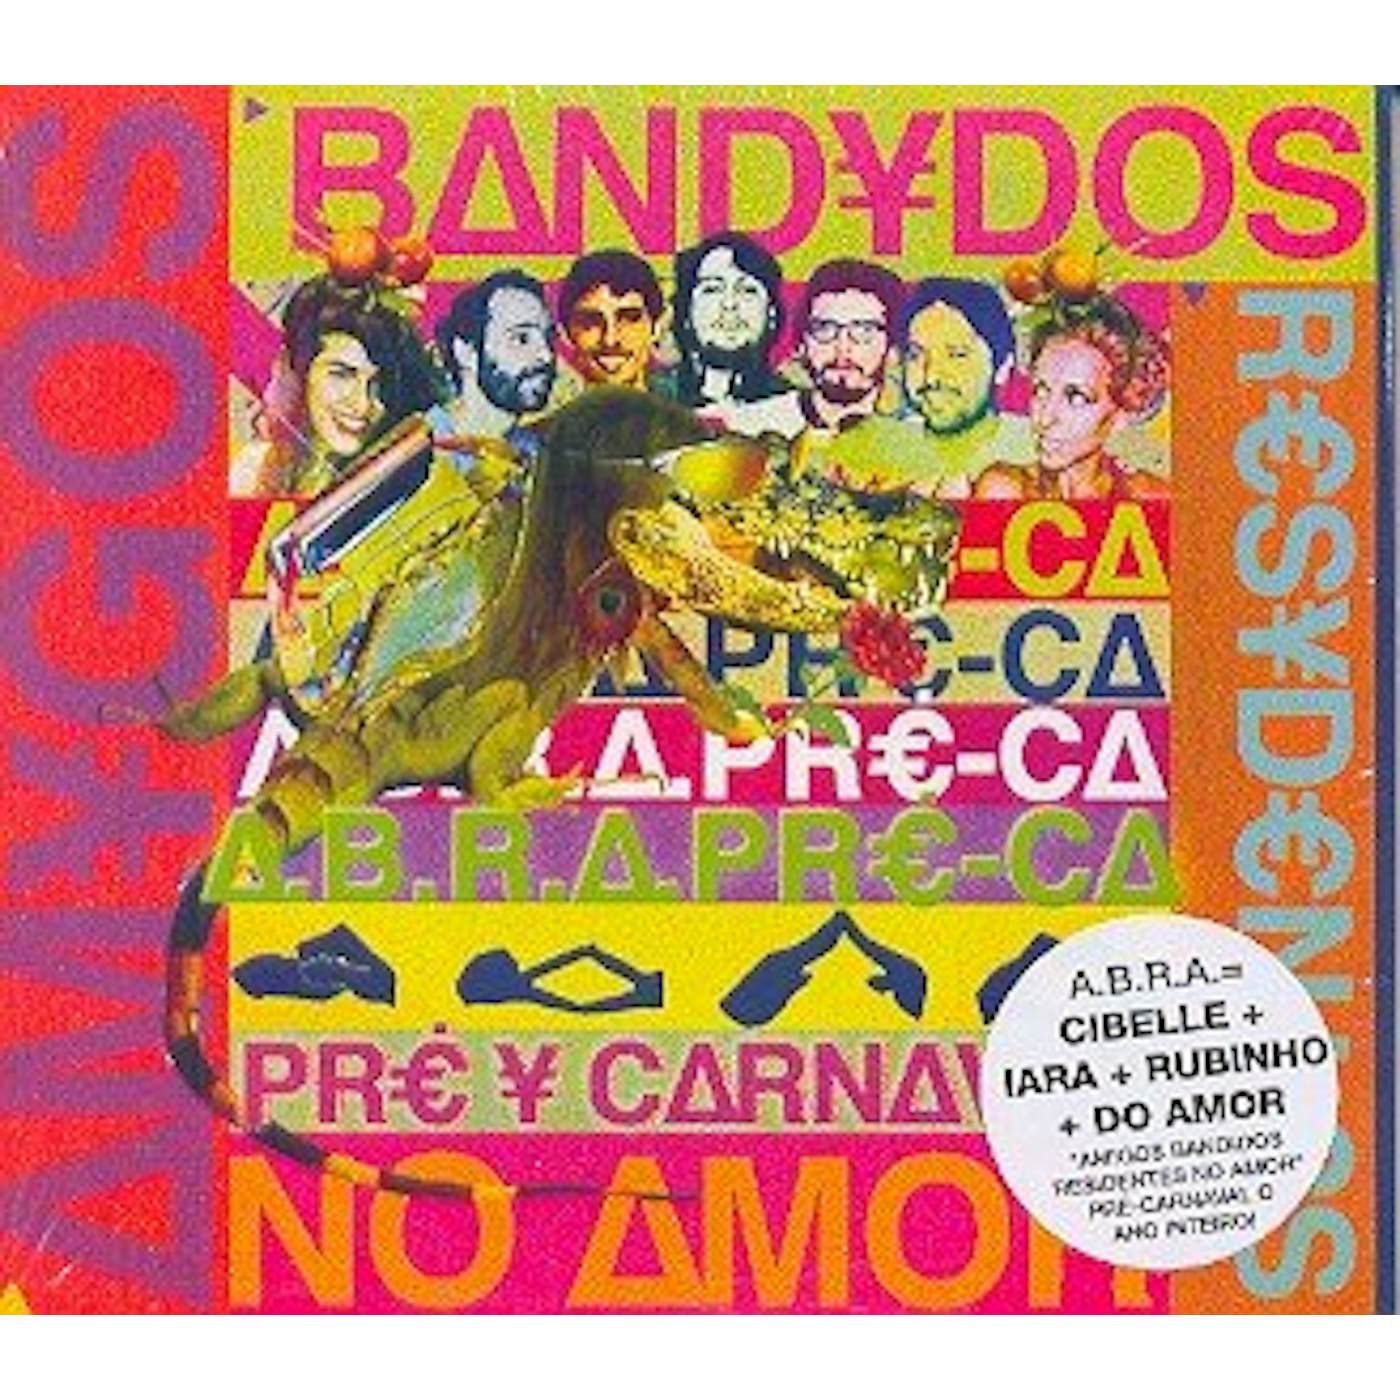 ABRA PRE-CA: AMIGOS BANDIDOS RESIDENTES NO AMOR CD